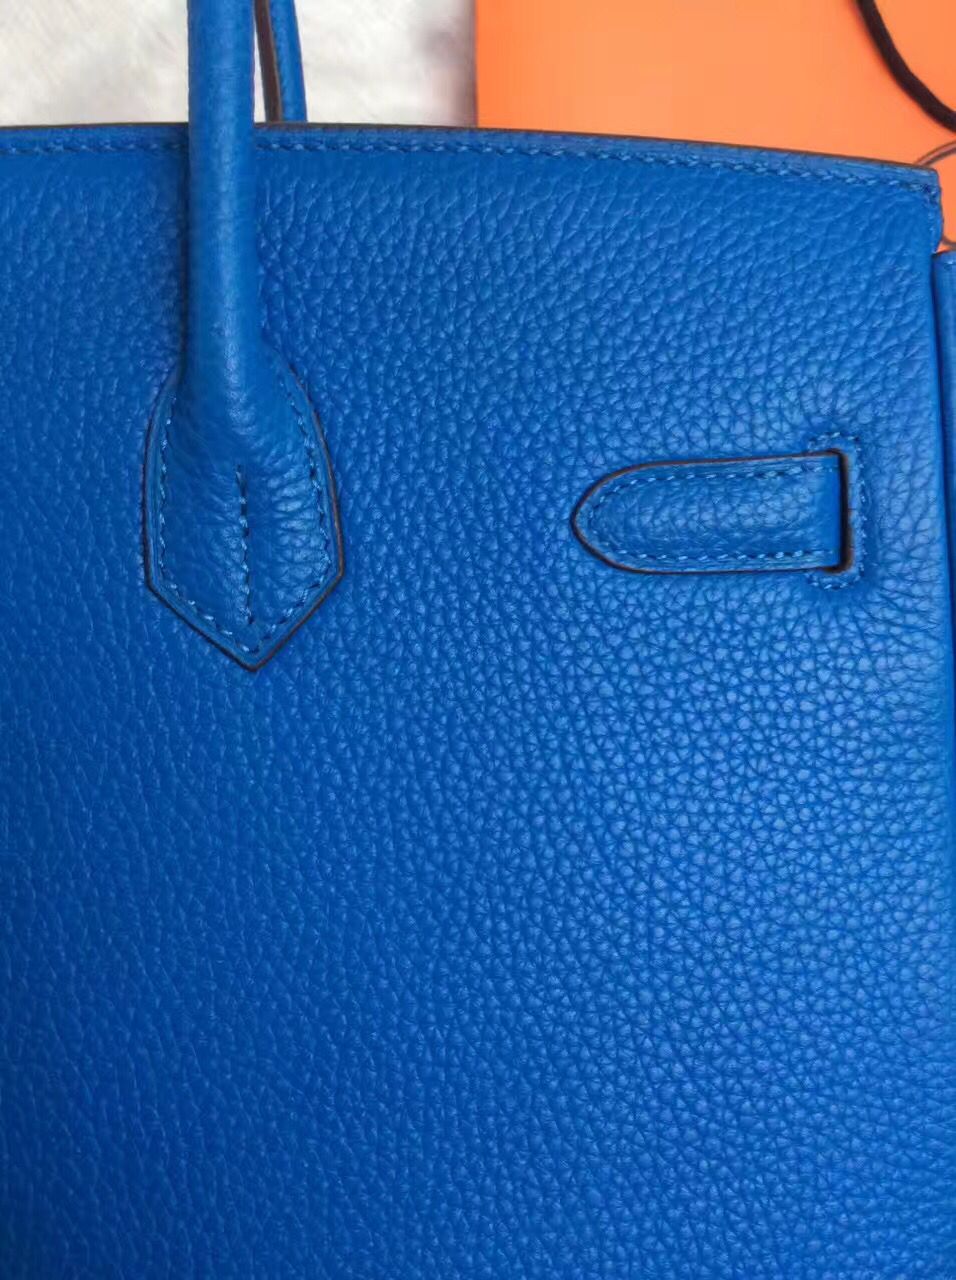 Hermes Birkin 30CM Tote Bag Blue Original Leather HB30 Glod